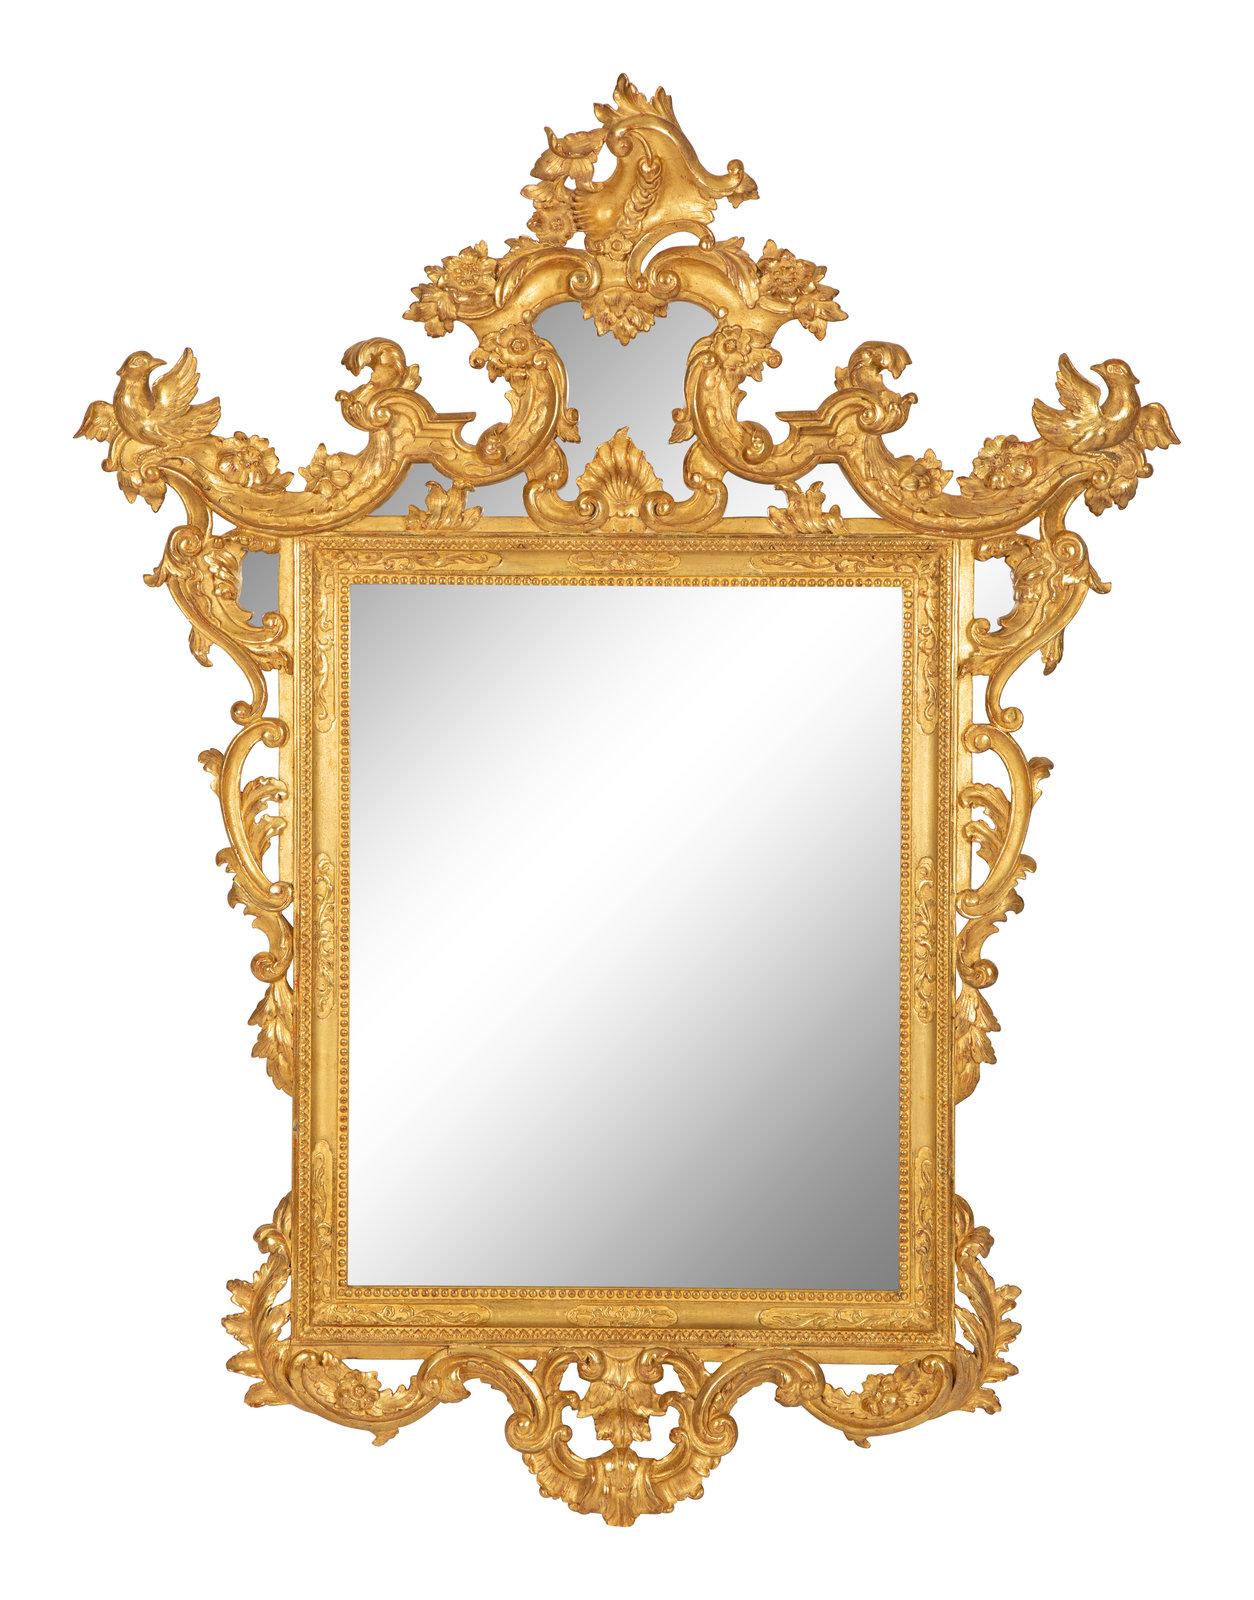 Vergoldeter Spiegel im italienischen Barockstil, frühes 20. Jahrhundert. Höhe 50 x Breite 39 Zoll.
 